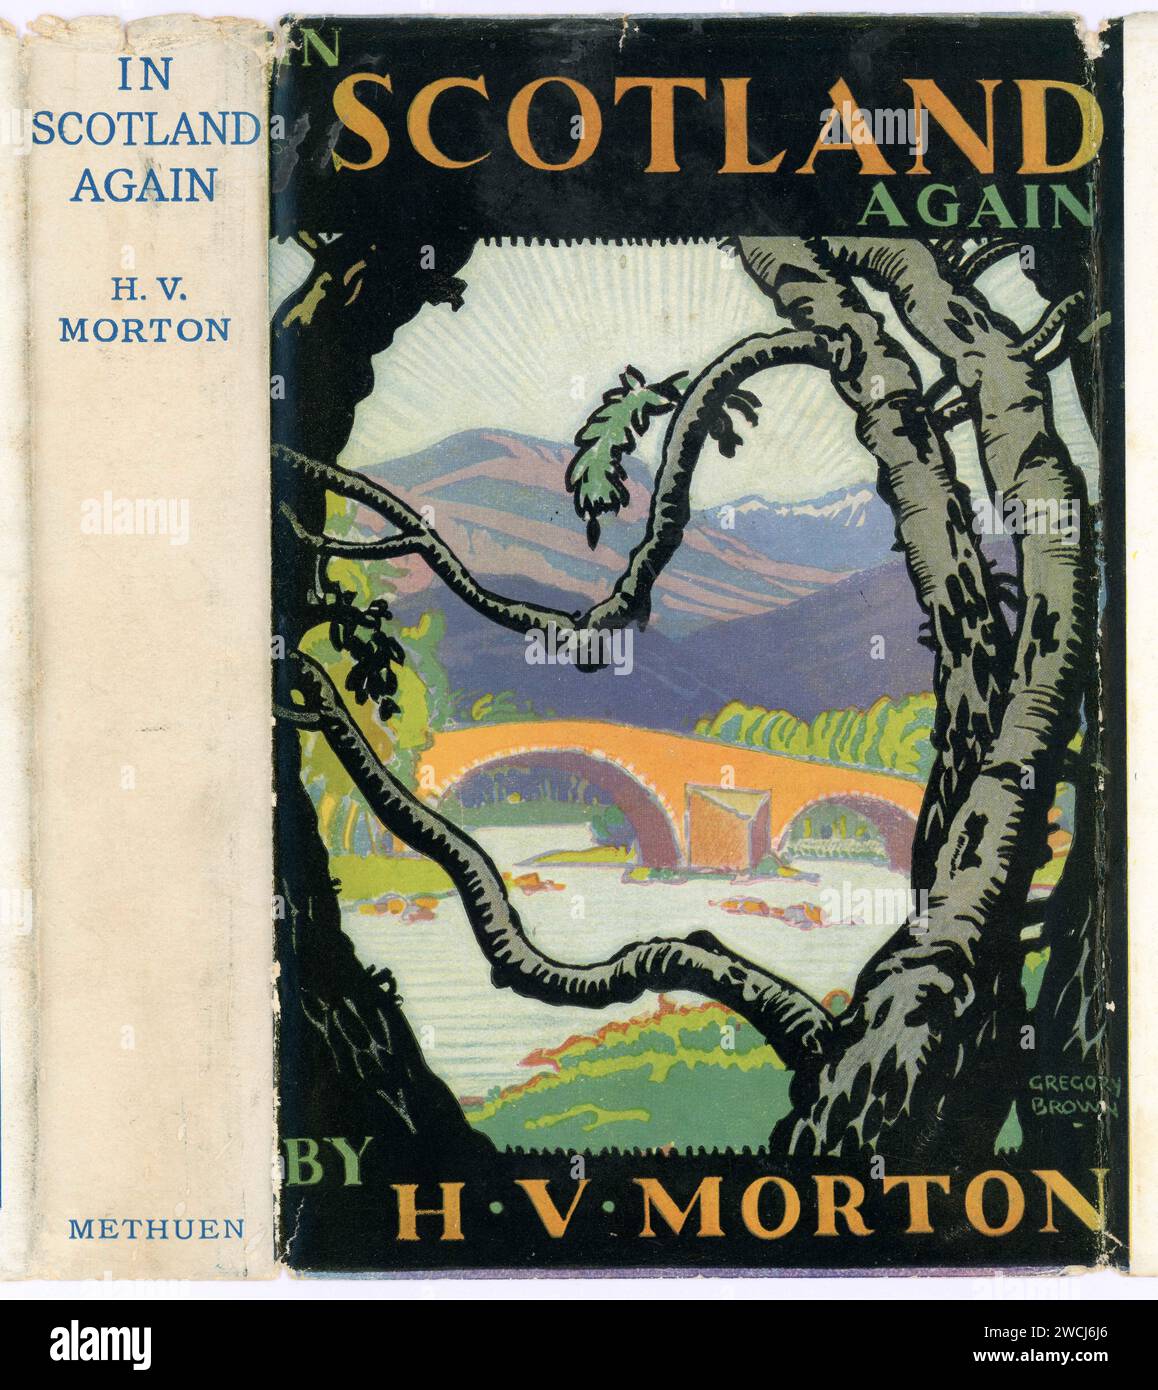 Original 1930er Jahre Buchjacke Illustration, wieder in Schottland von H. V. Morton. 11. Auflage (1. Pub 26. Oktober 1933) Illustrator ist A.E. Taylor, Großbritannien Stockfoto